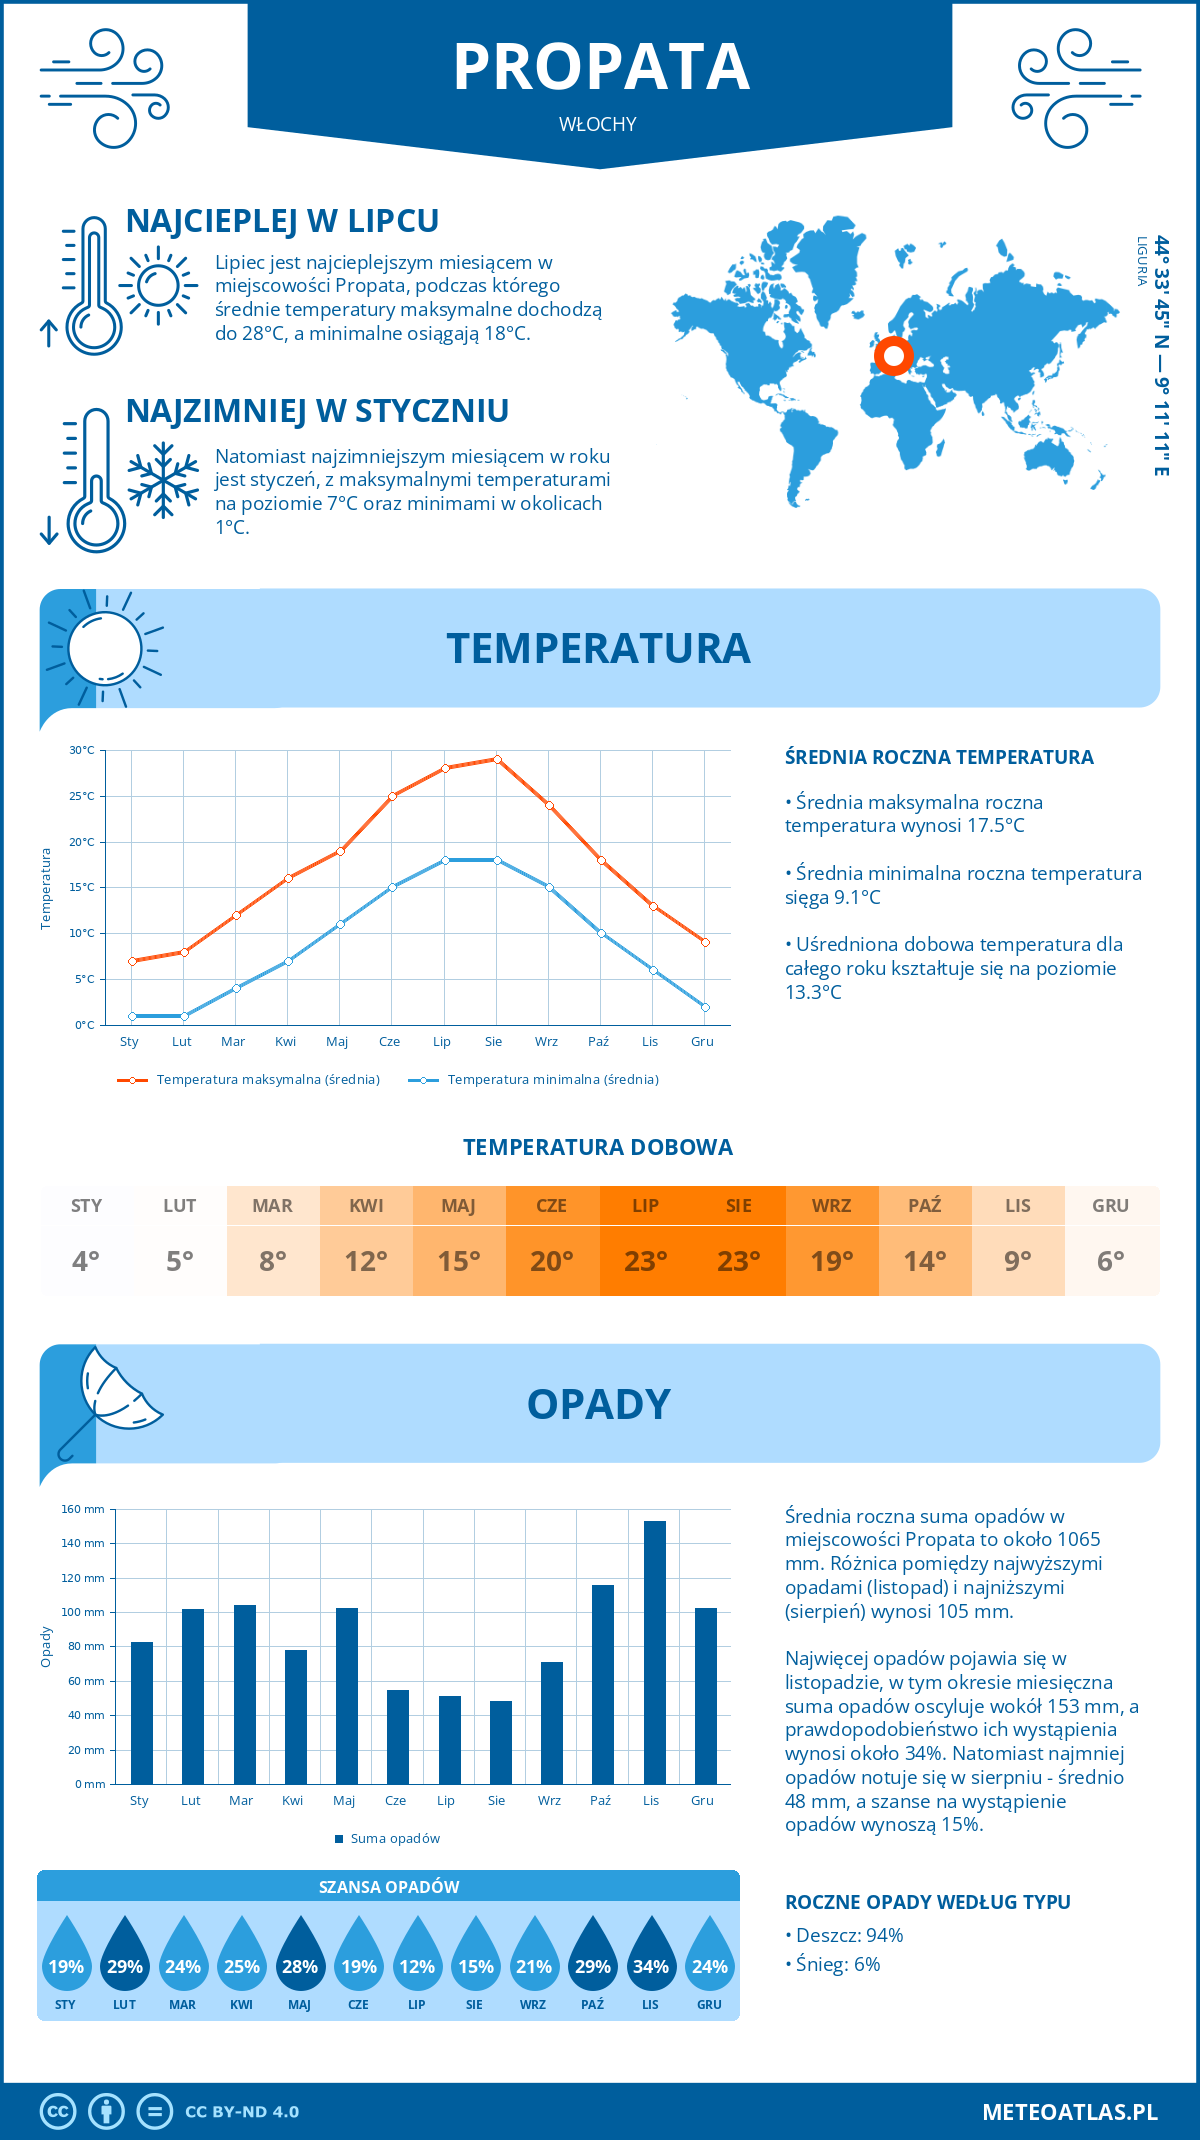 Pogoda Propata (Włochy). Temperatura oraz opady.